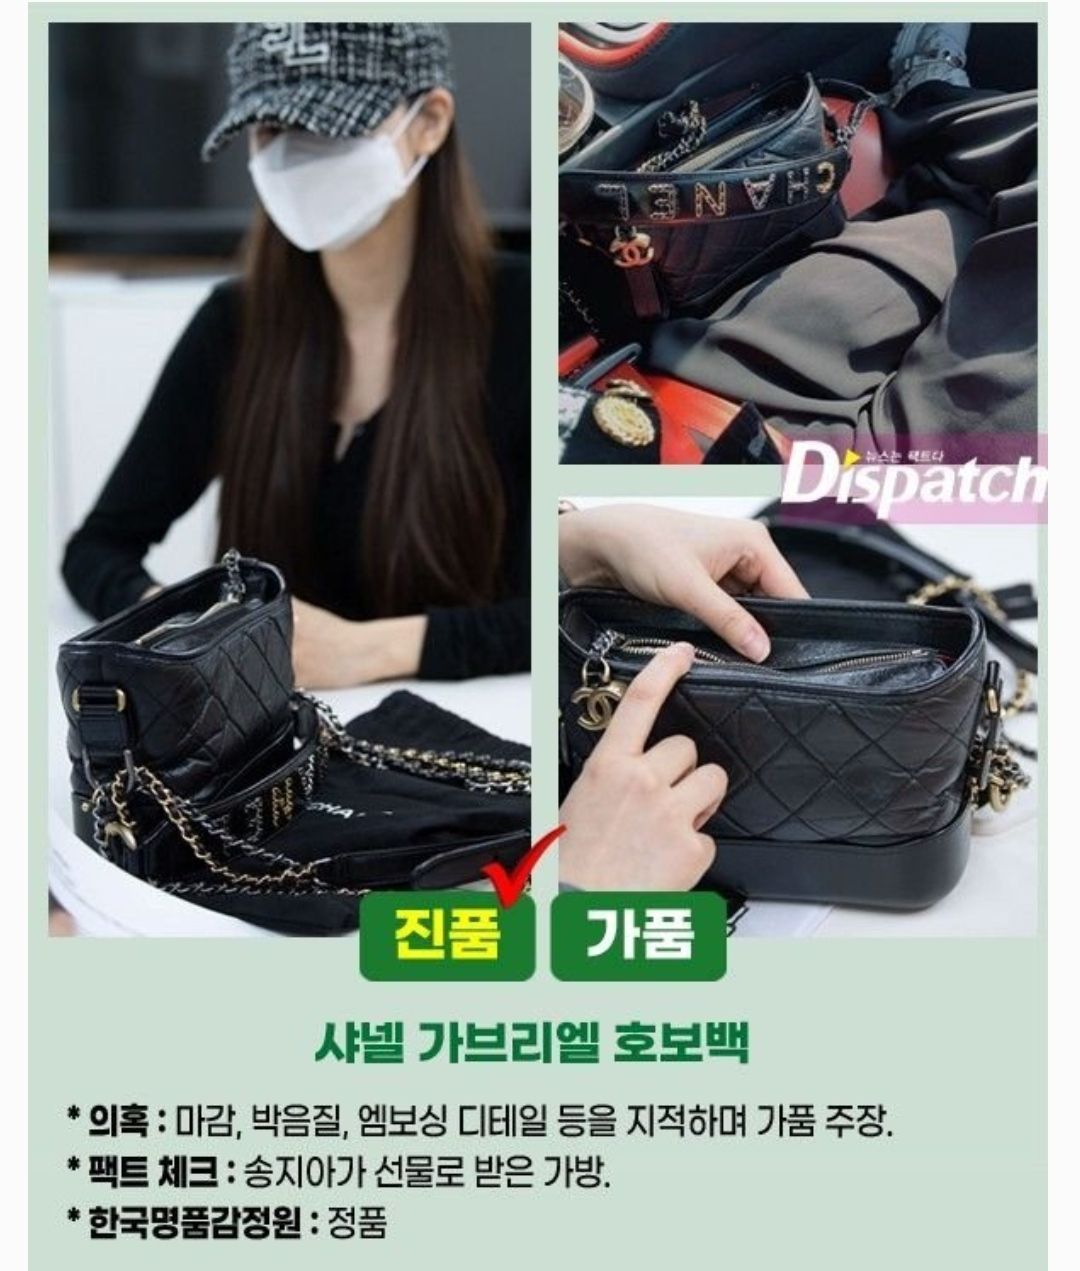 Saat Song Ji Ah mengotentifikasi barang mewah yang kontroversial bersama Dispatch. 